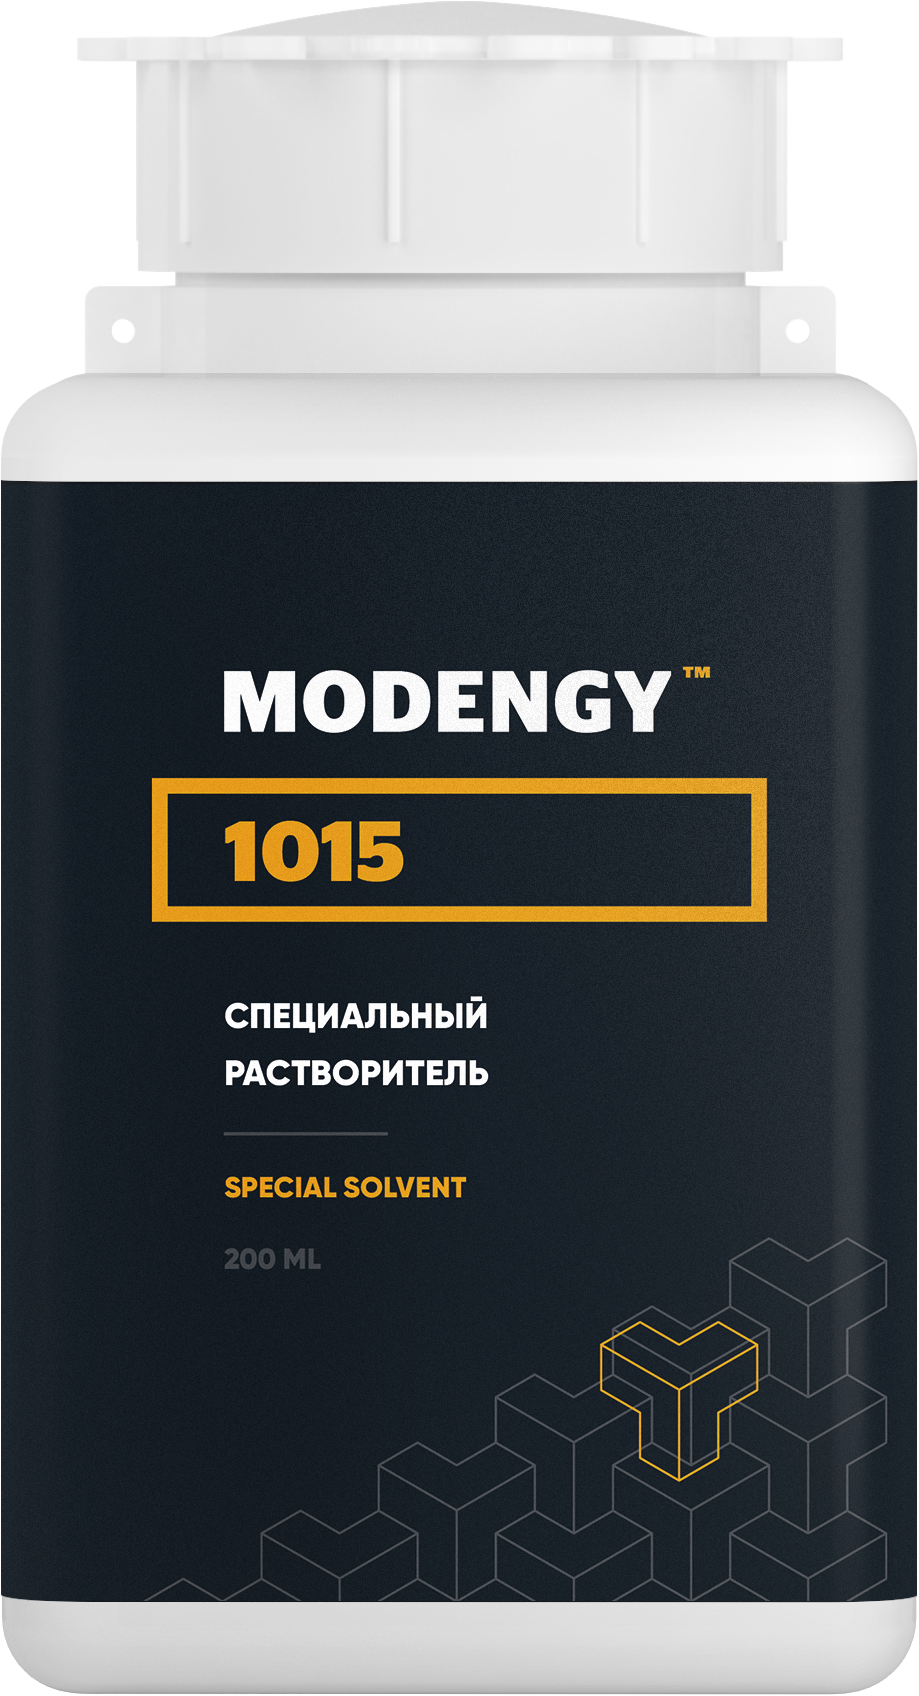 Специальный растворитель MODENGY 1015 (200 мл) специальный очиститель активатор modengy 200 мл